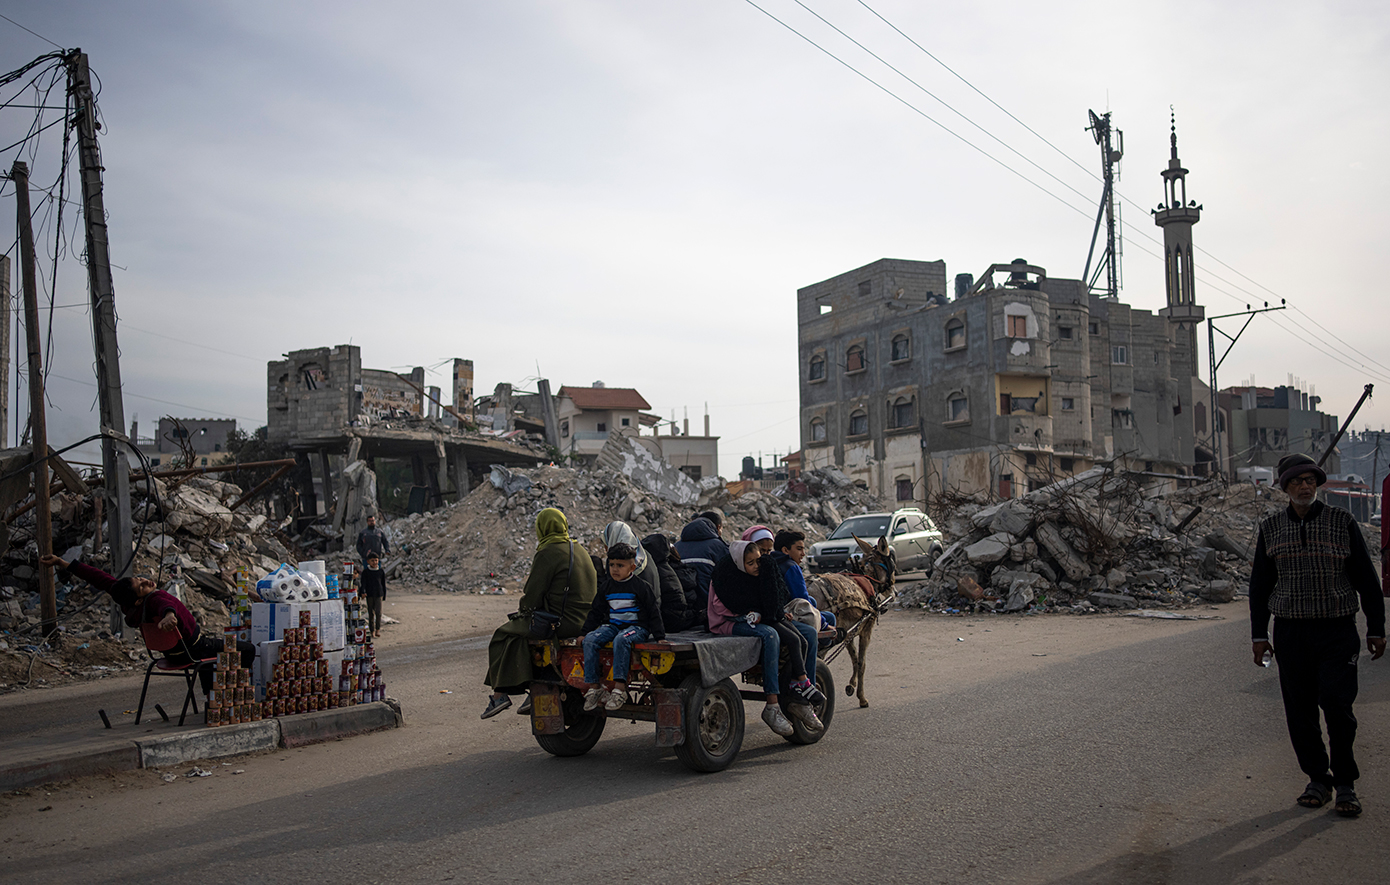 Ο πόλεμος συνεχίζεται στη Γάζα, παρά την έκκληση του ΟΗΕ για «κατάπαυση του πυρός» &#8211; Ισραήλ εναντίον Ουάσιγκτον